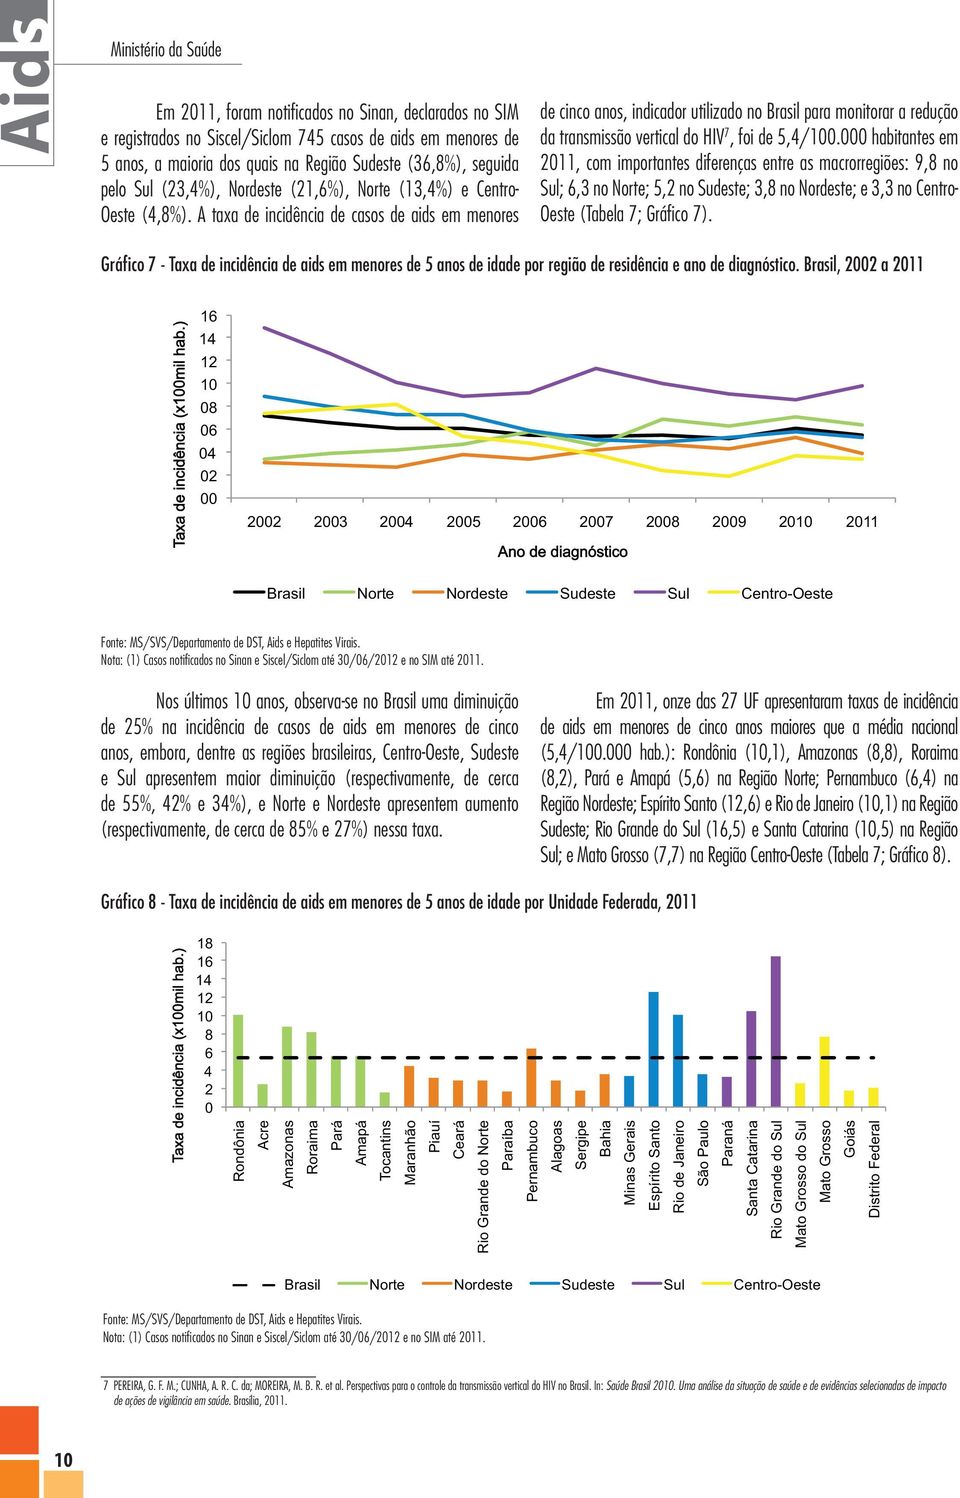 A taxa de incidência de casos de aids em menores de cinco anos, indicador utilizado no Brasil para monitorar a redução da transmissão vertical do HIV 7, foi de 5,4/100.